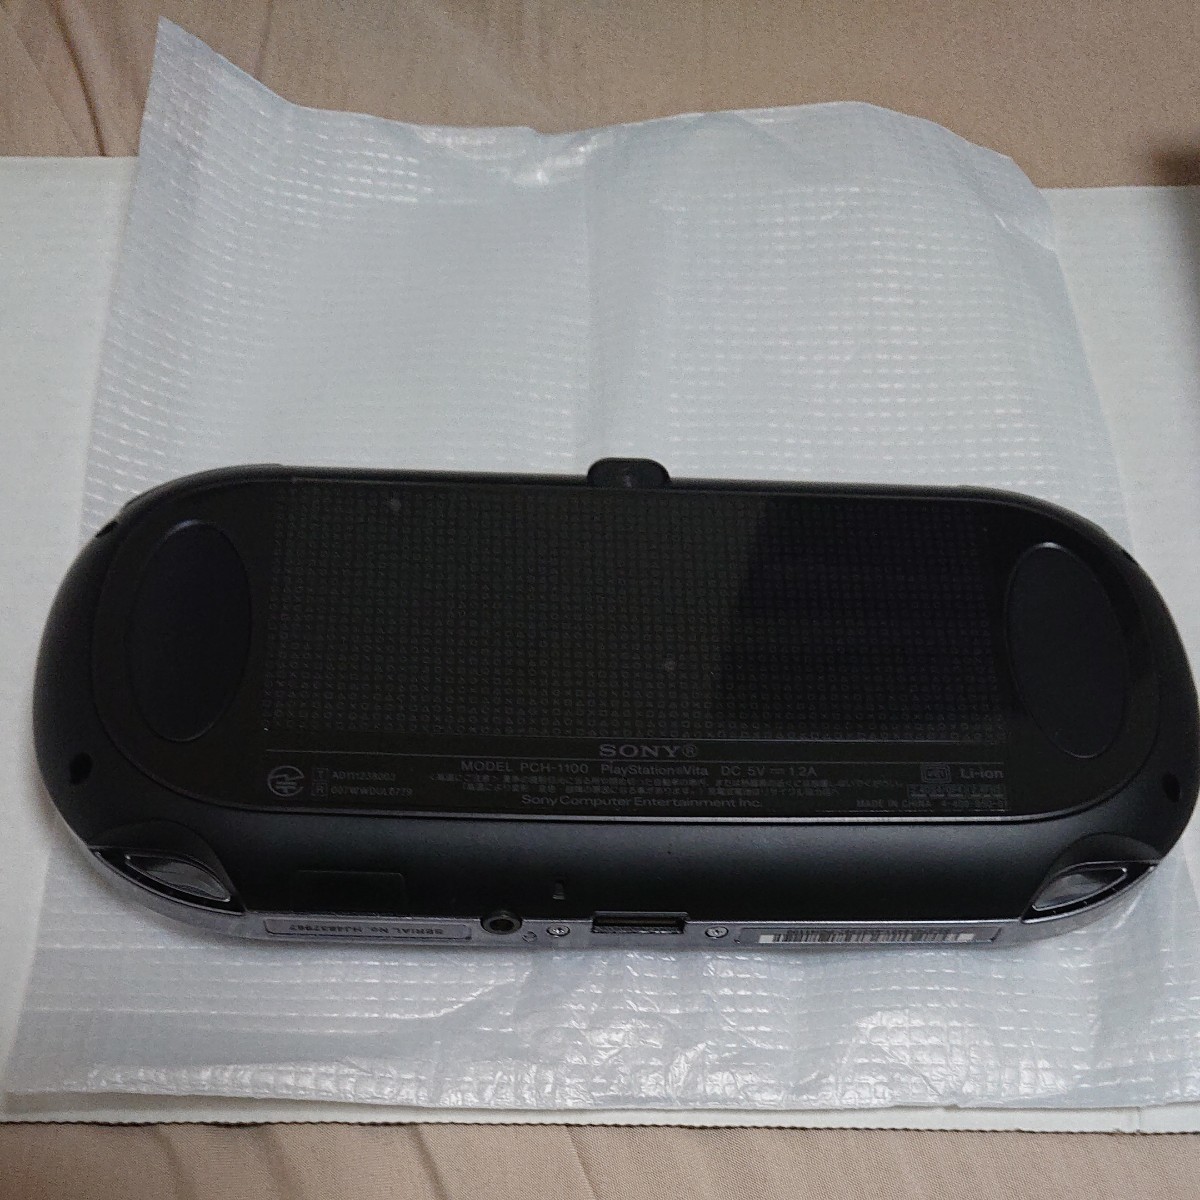 PlayStation Vita 3G/Wi-Fiモデル クリスタル・ブラック 限定版 PCH-1100 AB01